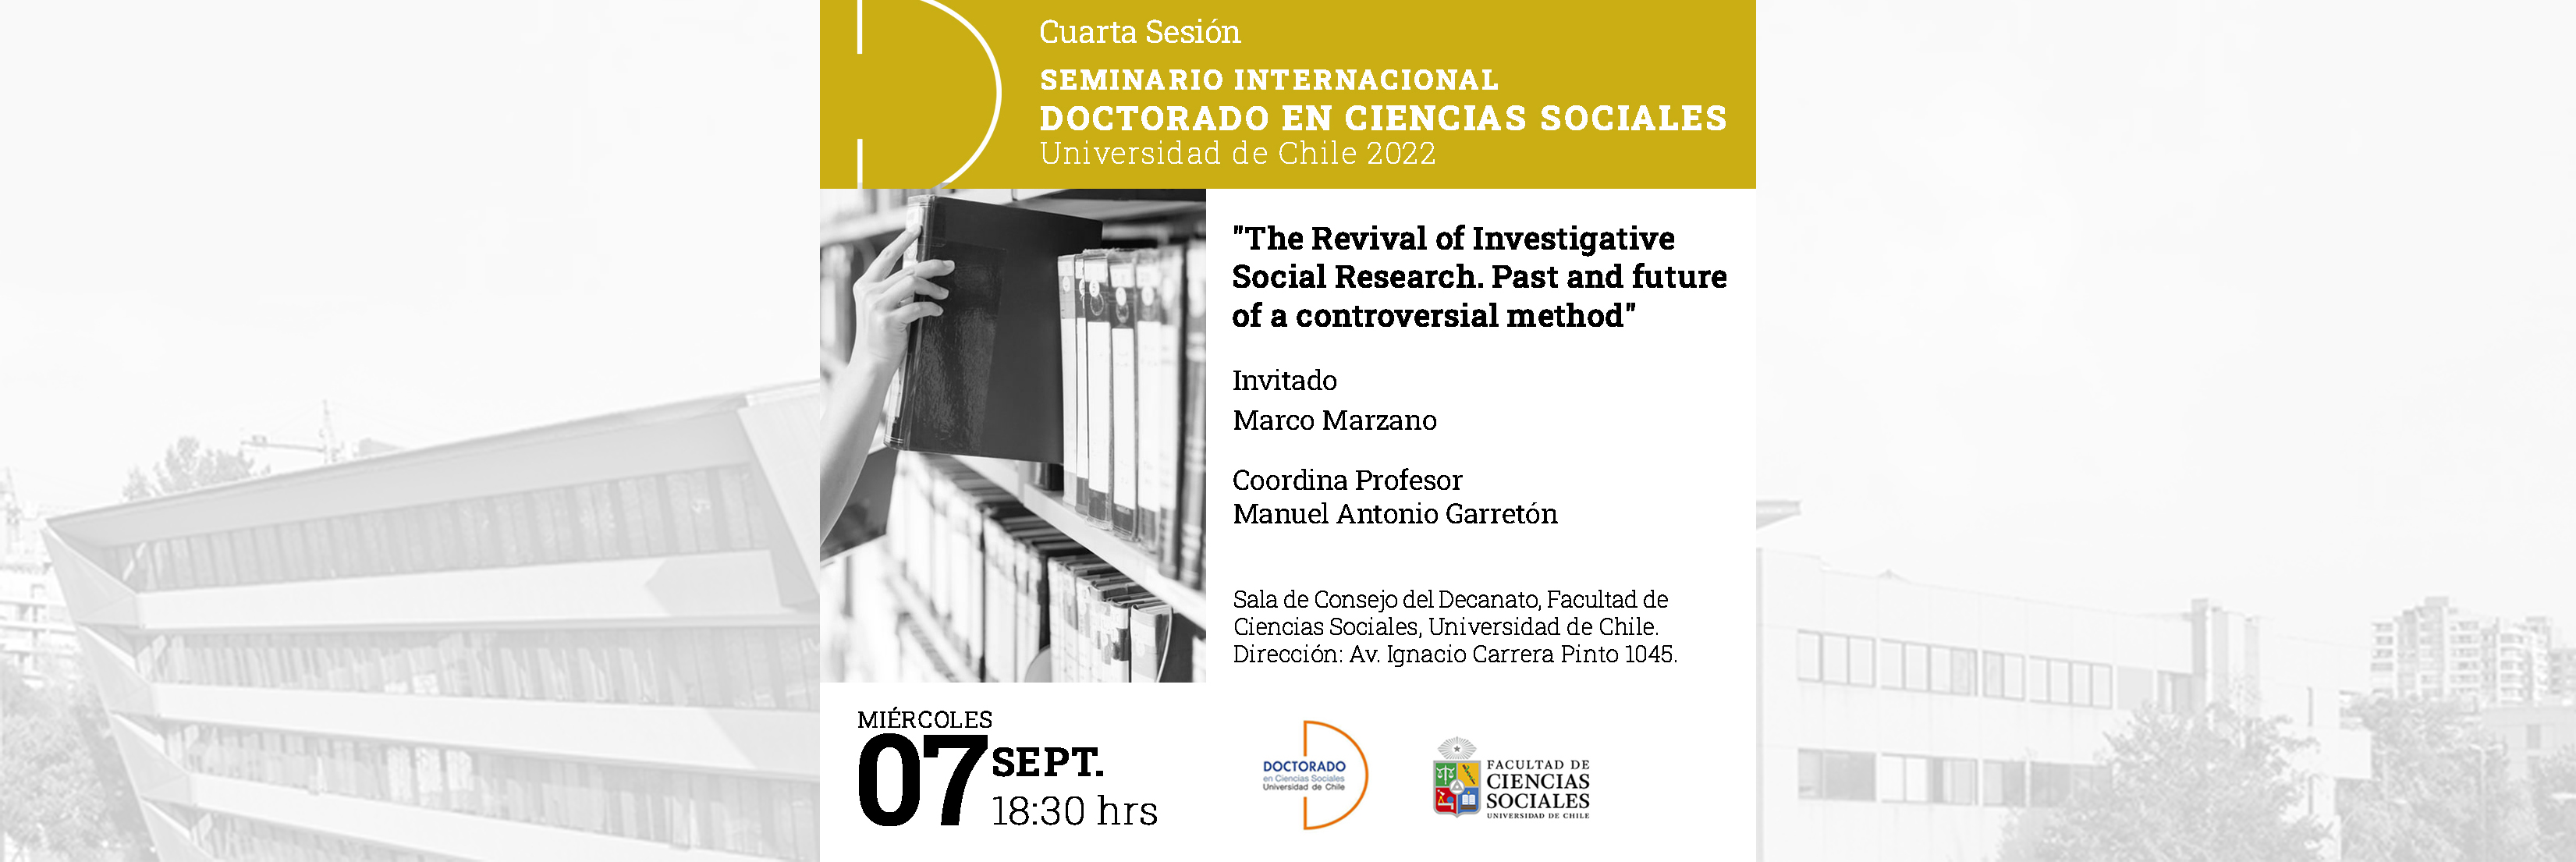 Cuarta sesión del seminario Internacional del Doctorado en Ciencias Sociales 2022